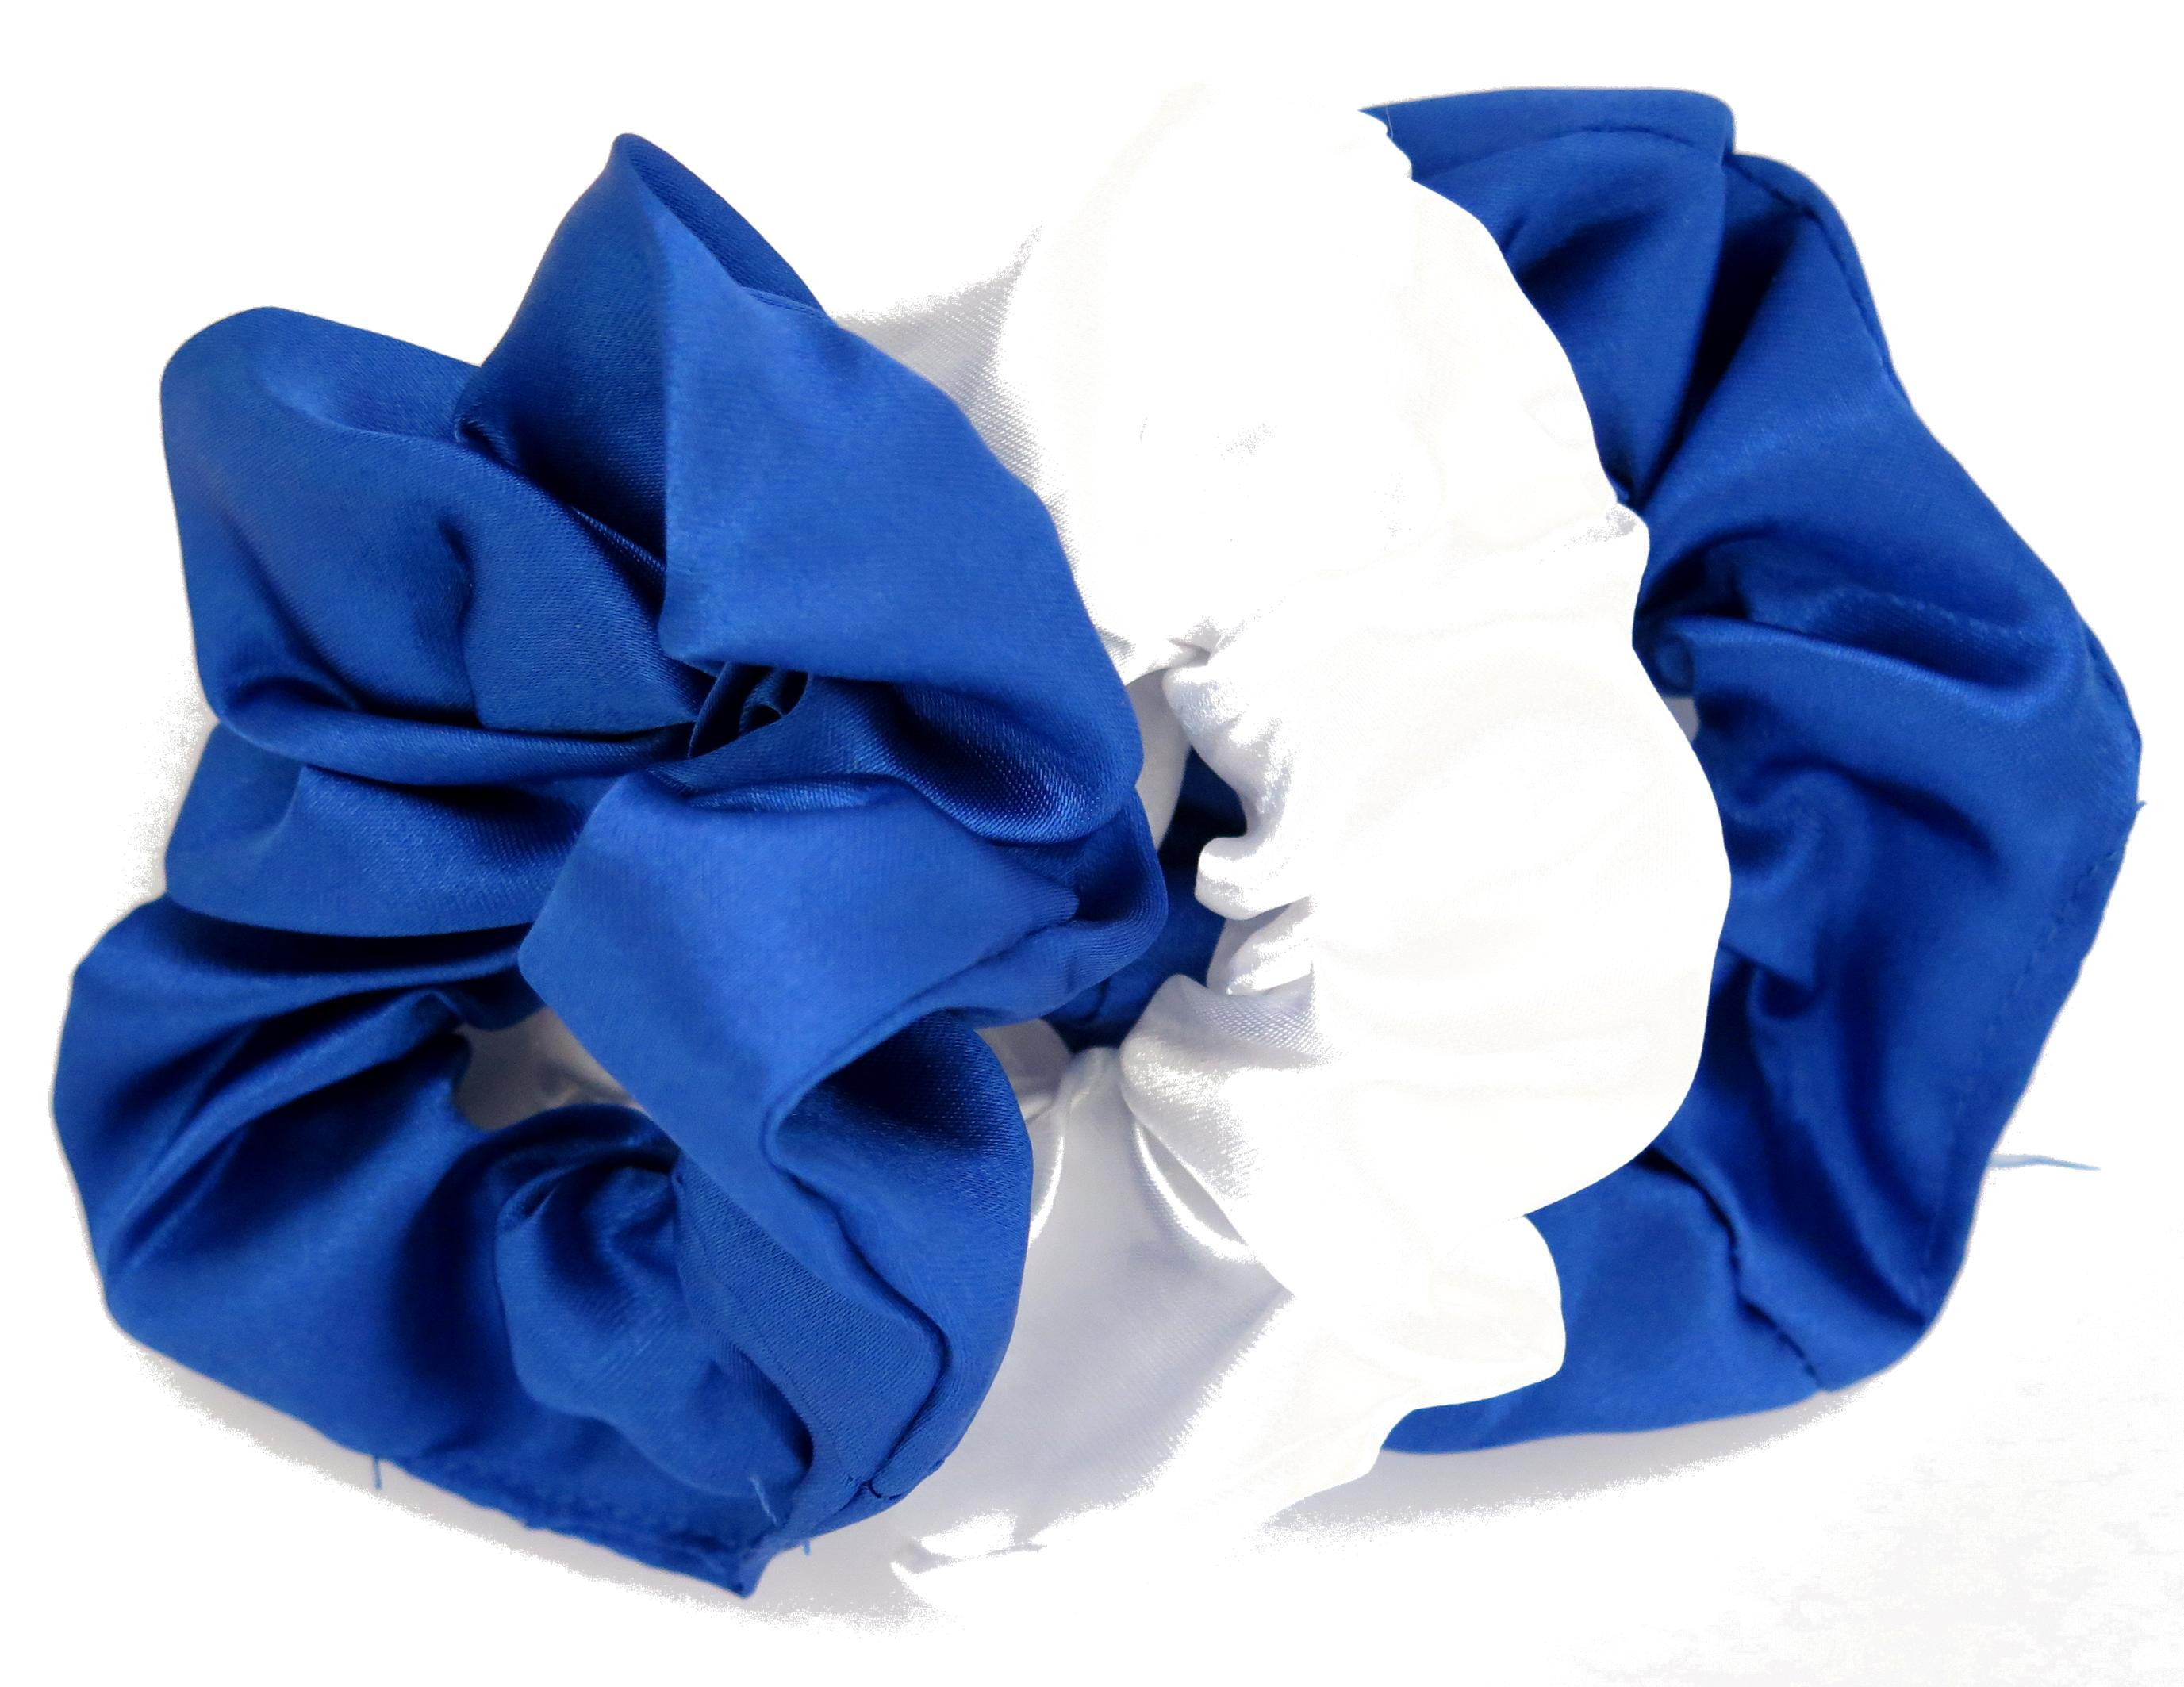 9. Scrunchie Hair Ties in Royal Blue - wide 10